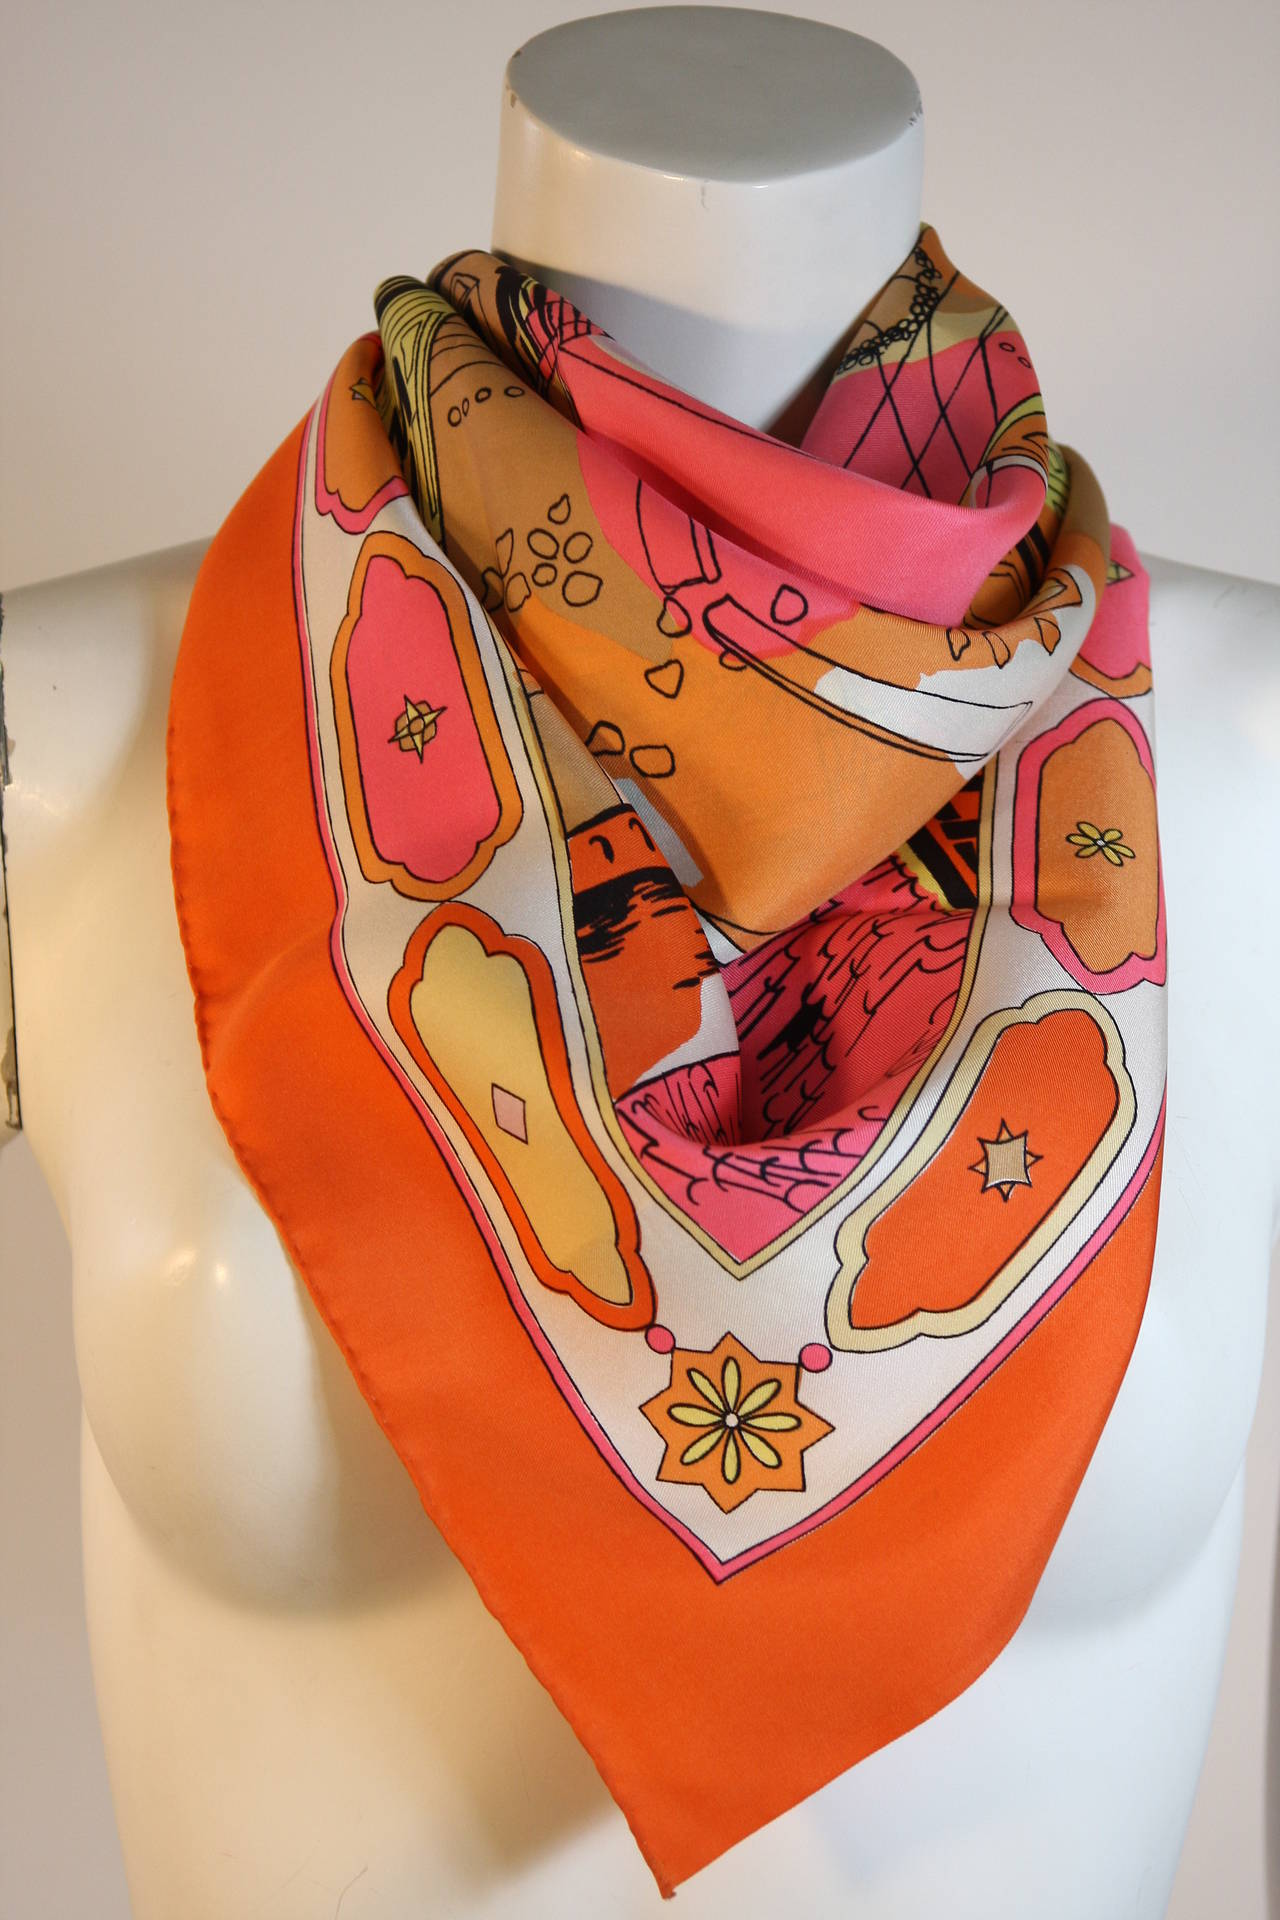 Wunderschönes und seltenes Emilio Pucci Florentine Stadtbild in Orangetönen, Rosa und Schwarz mit cremefarbenem Bordürendetaildruck. In ausgezeichnetem Zustand mit wenig  Gebrauchsspuren.

Messungen -
36 x 35

Bitte beachten Sie, dass nur 2